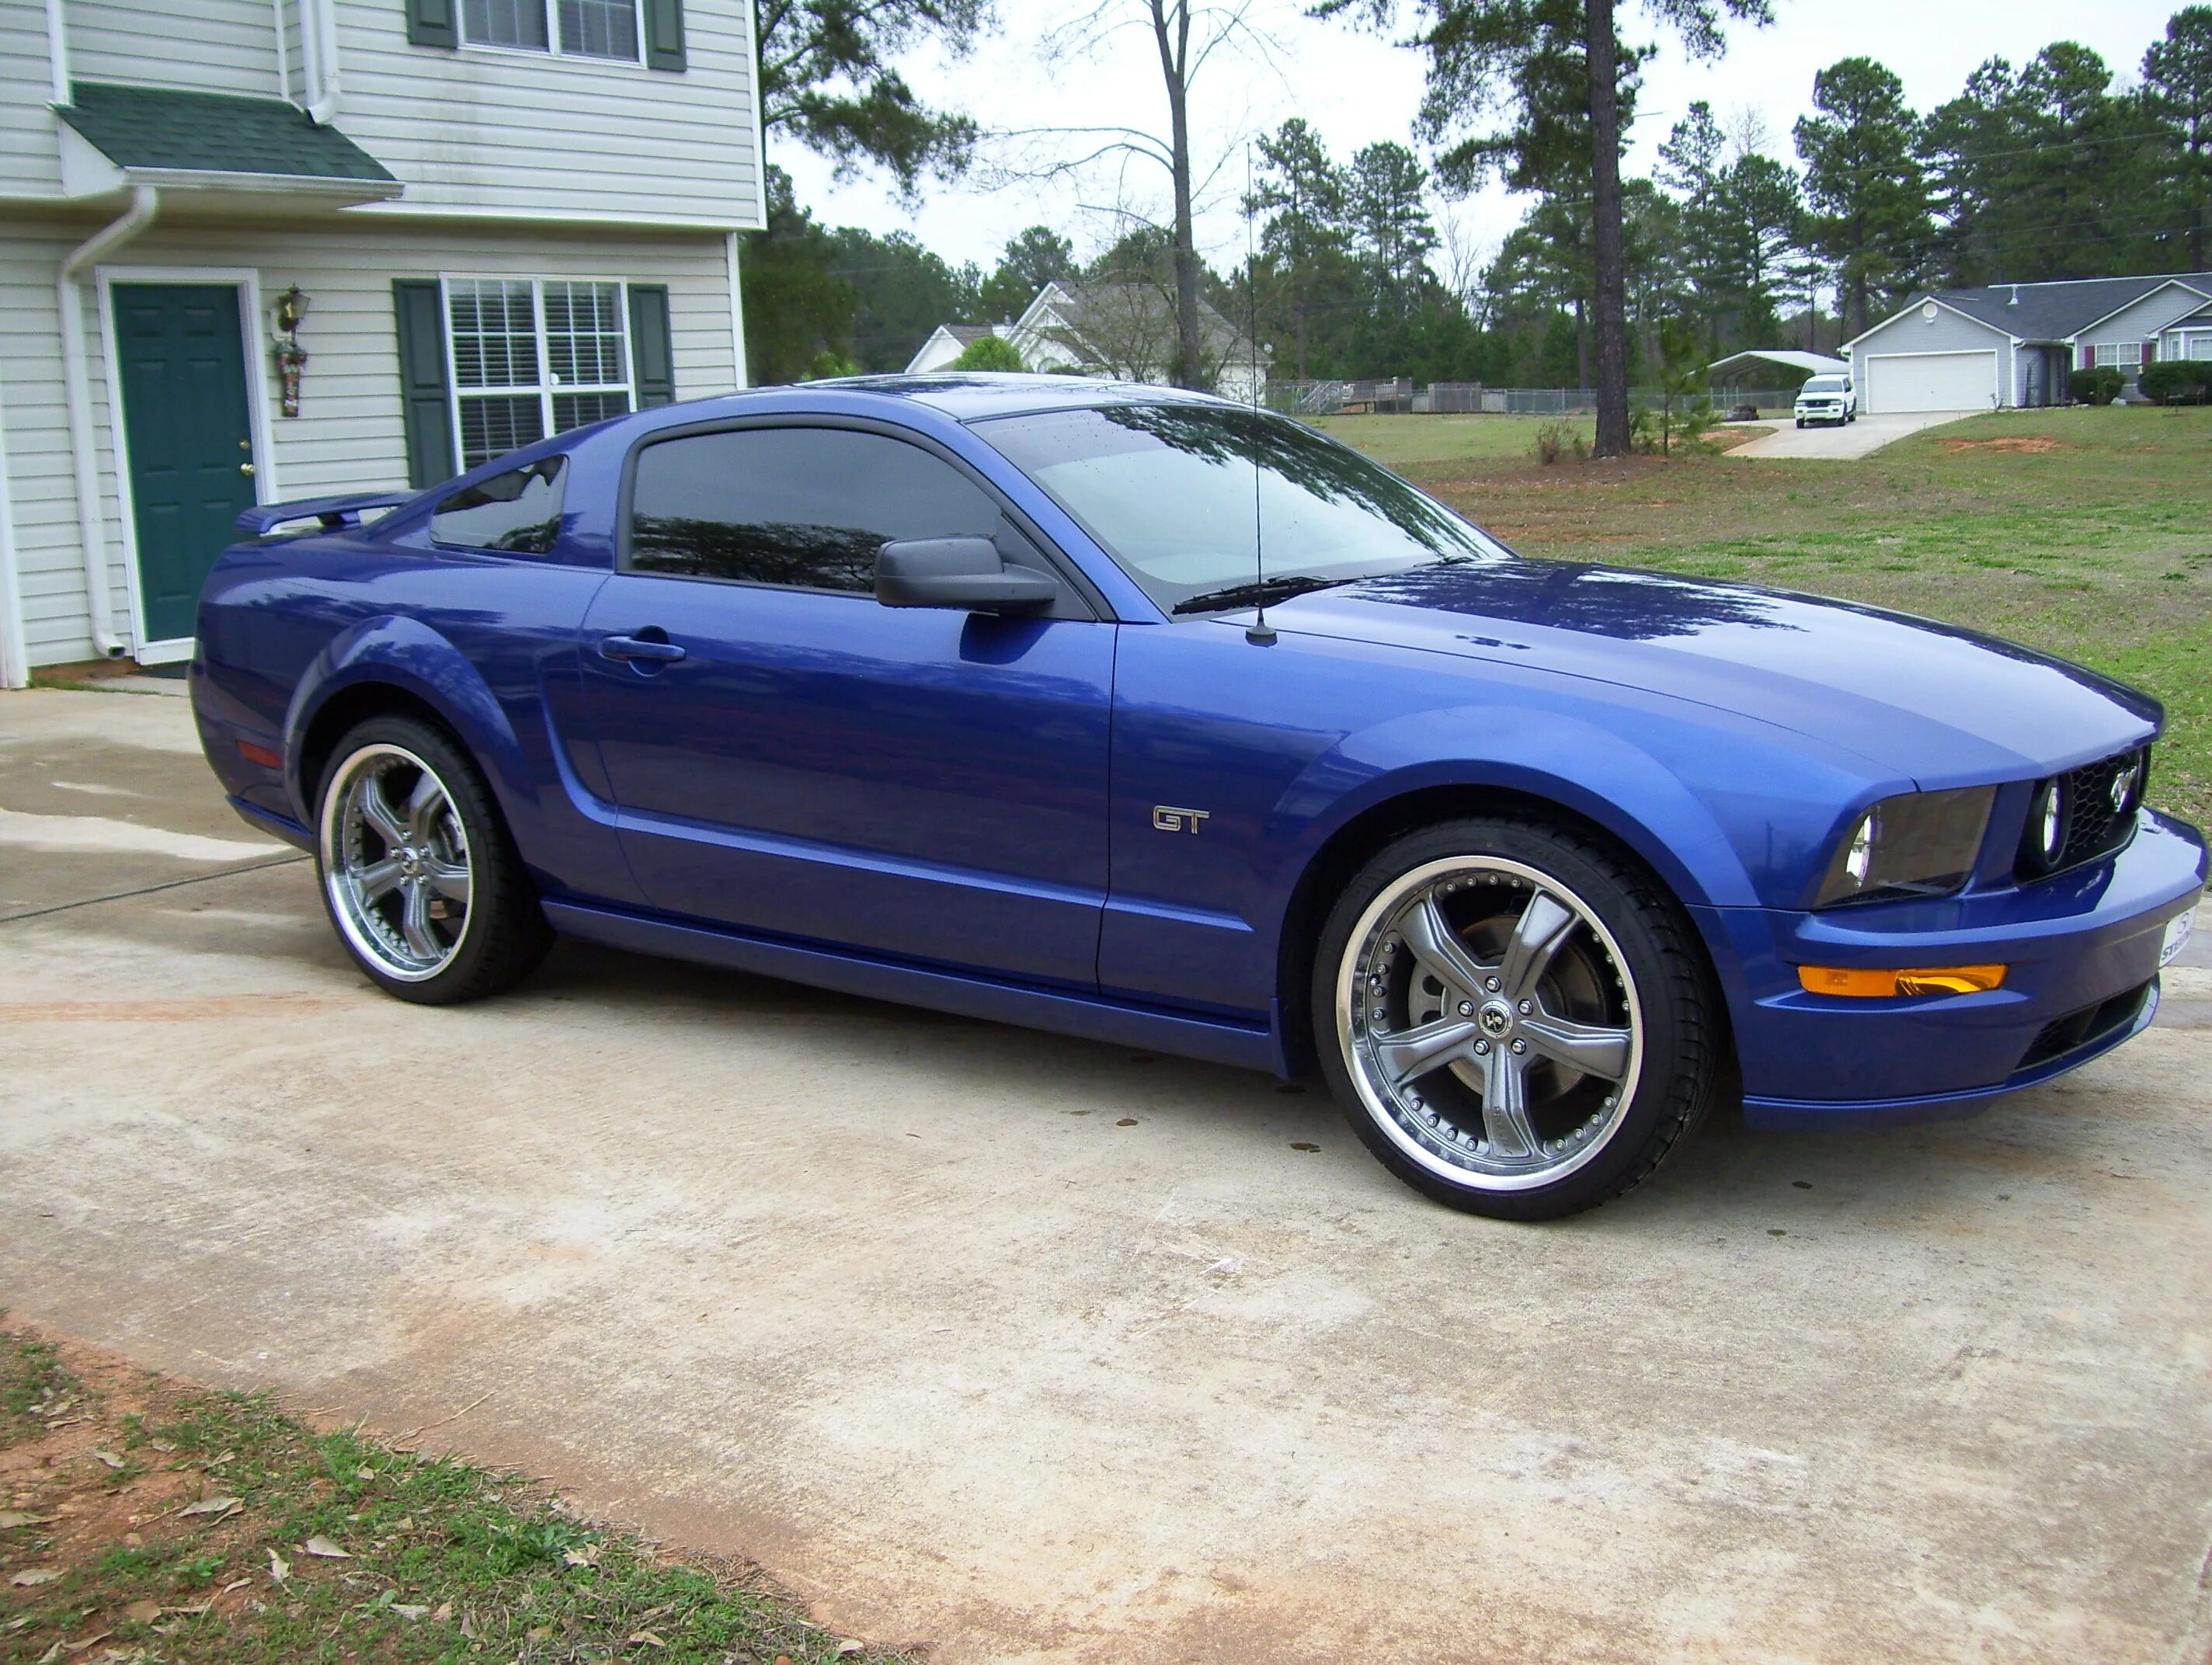 Форд 2005 г. Форд Мустанг ГТ 2005. Ford Mustang 2005. Ford Mustang 2005 Blue. Mustang 2005 Форд Мустанг.